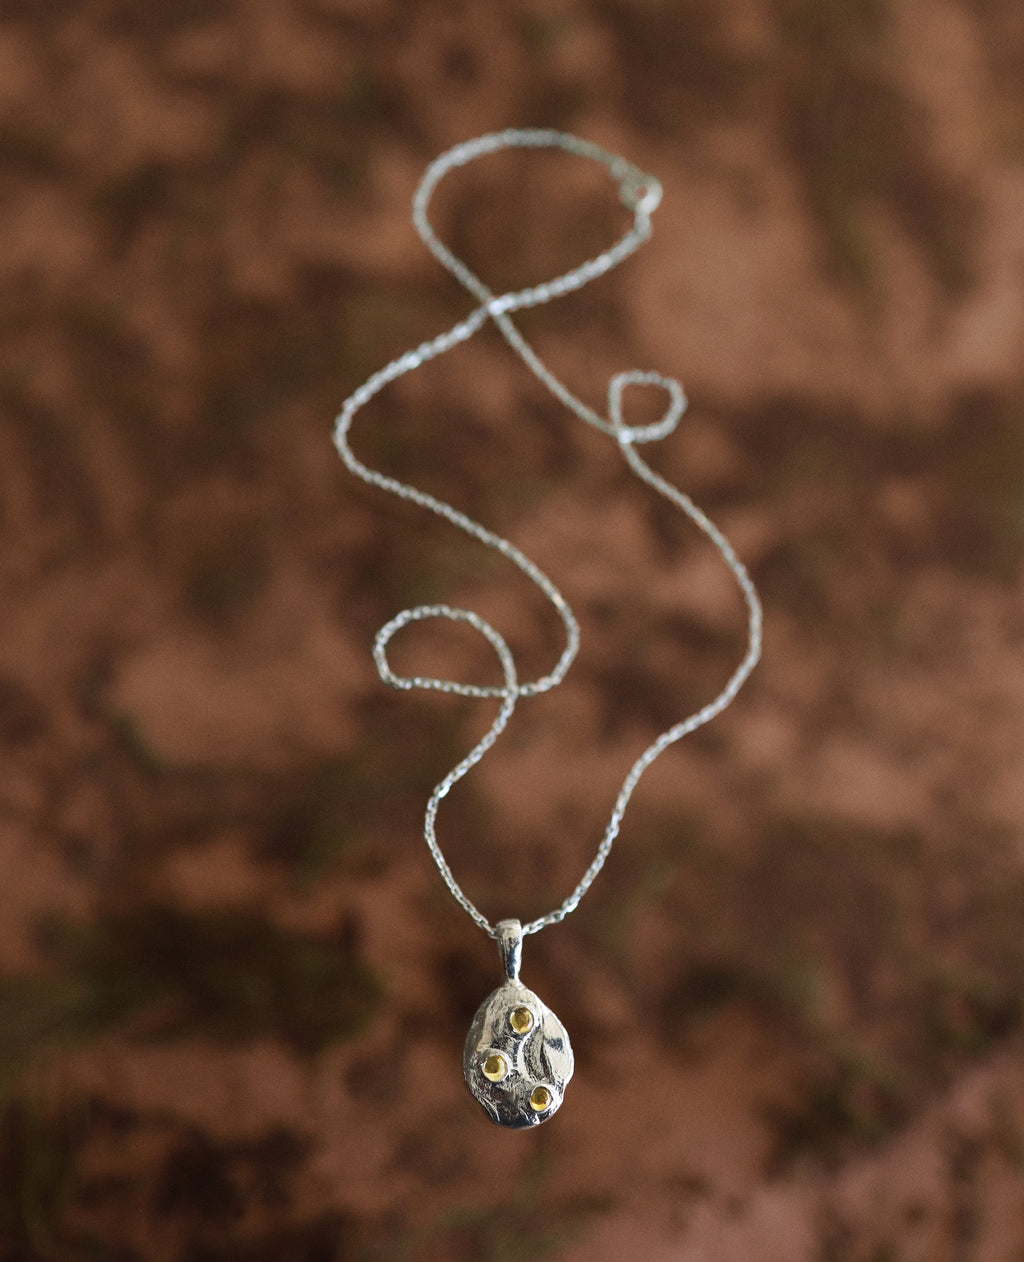 CELESTIAL SPORES // pendentif en argent - ORA-C jewelry - bijoux faits à la main par Caroline Pham, designer indépendante basée à Montréal